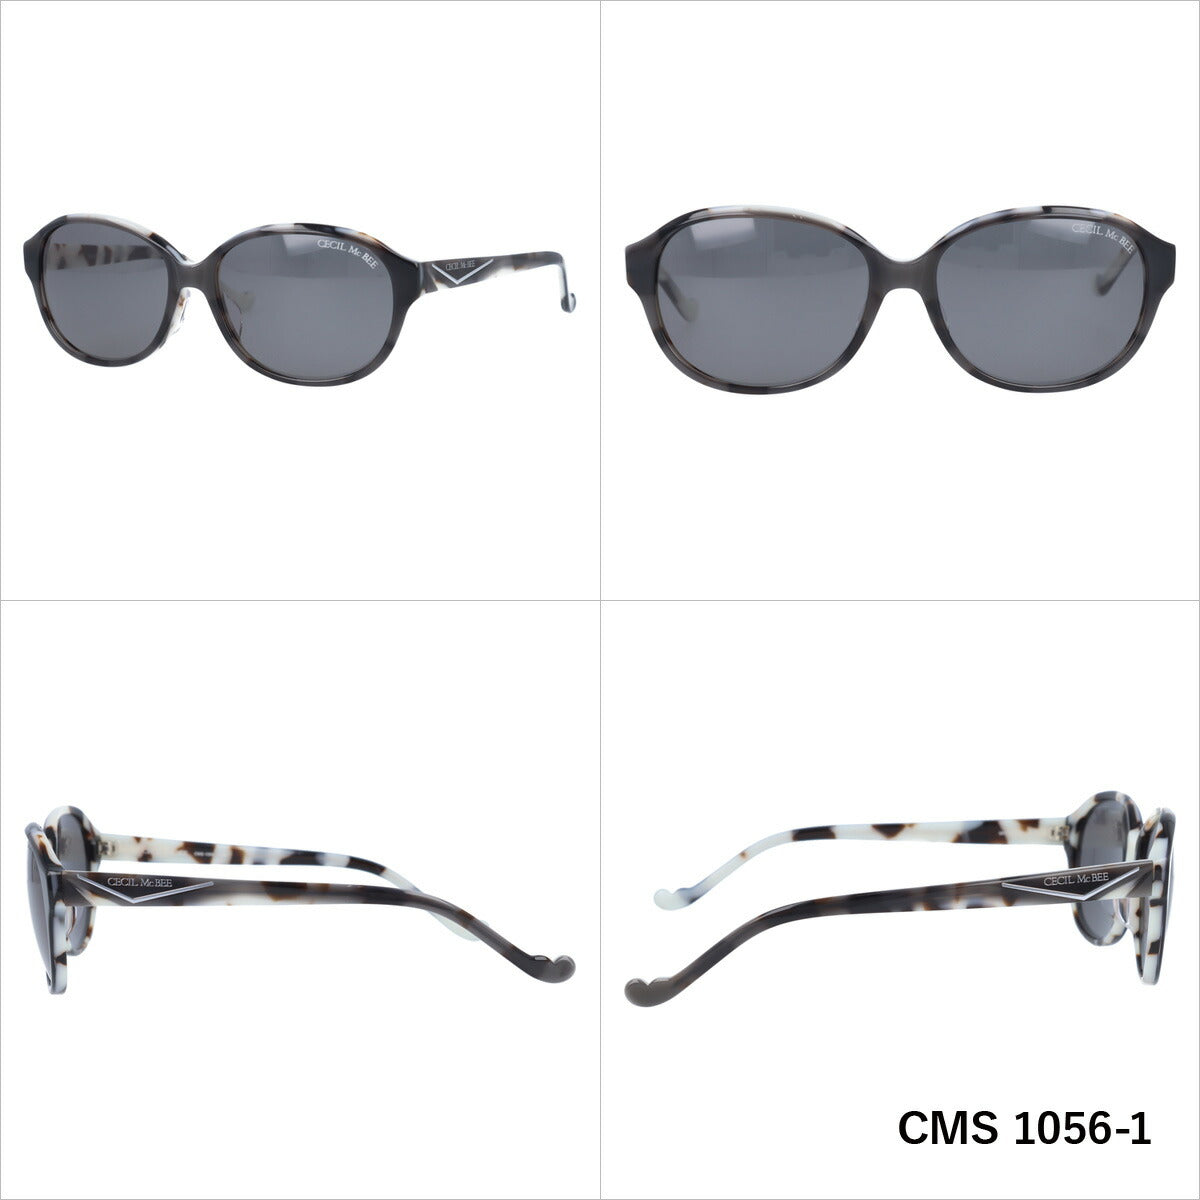 レディース サングラス CECIL McBEE セシルマクビー CMS 1056 全3色 56サイズ アジアンフィット オーバル型 女性 UVカット 紫外線 対策 ブランド 眼鏡 メガネ アイウェア 人気 おすすめ ラッピング無料